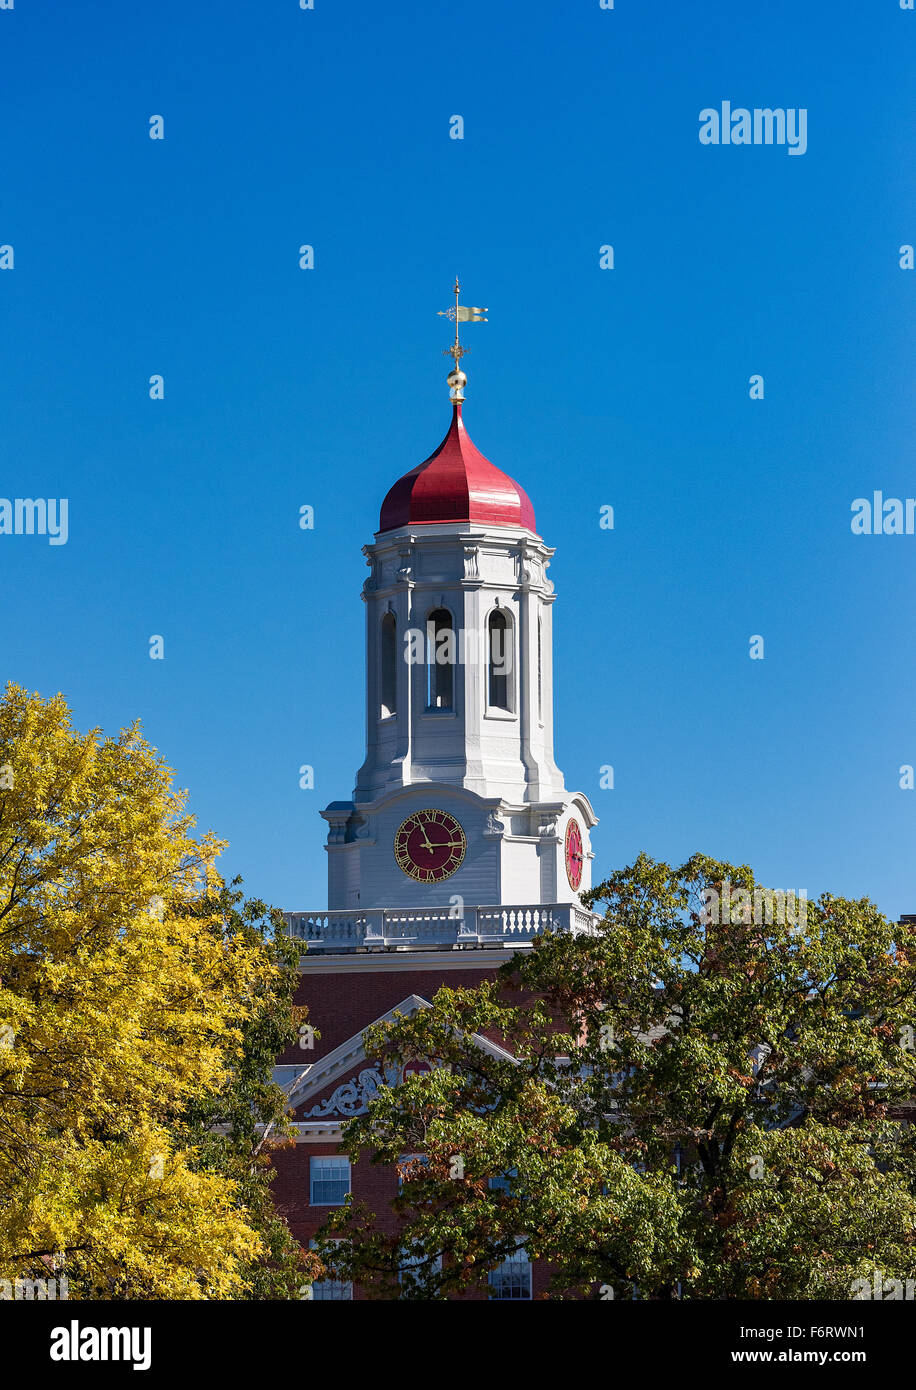 Dortoir Chambre Dunster avec tour de l'horloge, l'Université de Harvard, Cambridge, Massachusetts, USA Banque D'Images